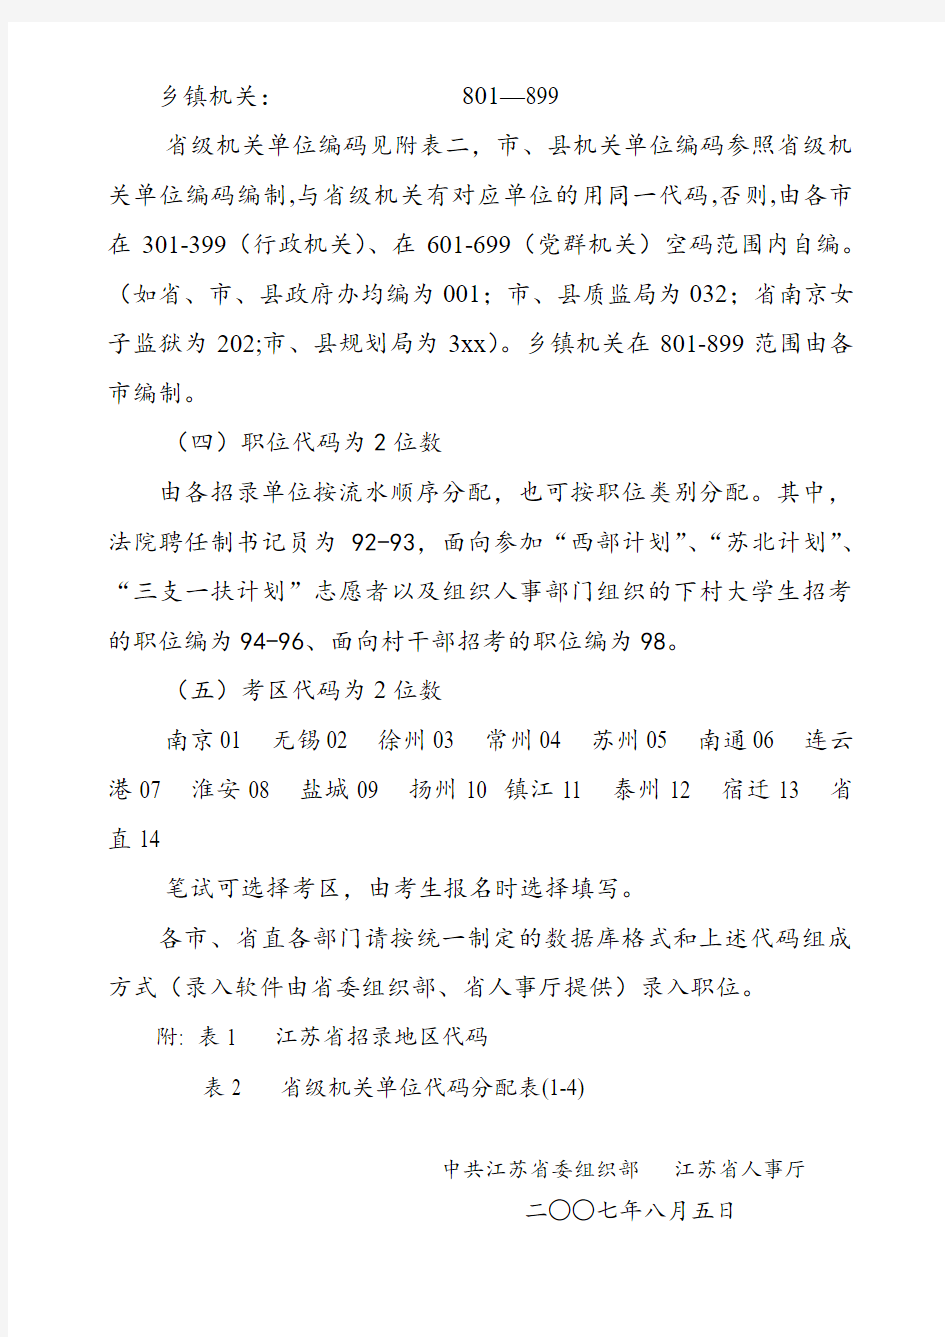 江苏省考试录用机关公务员和参照管理单位工作人员代码分配说明书